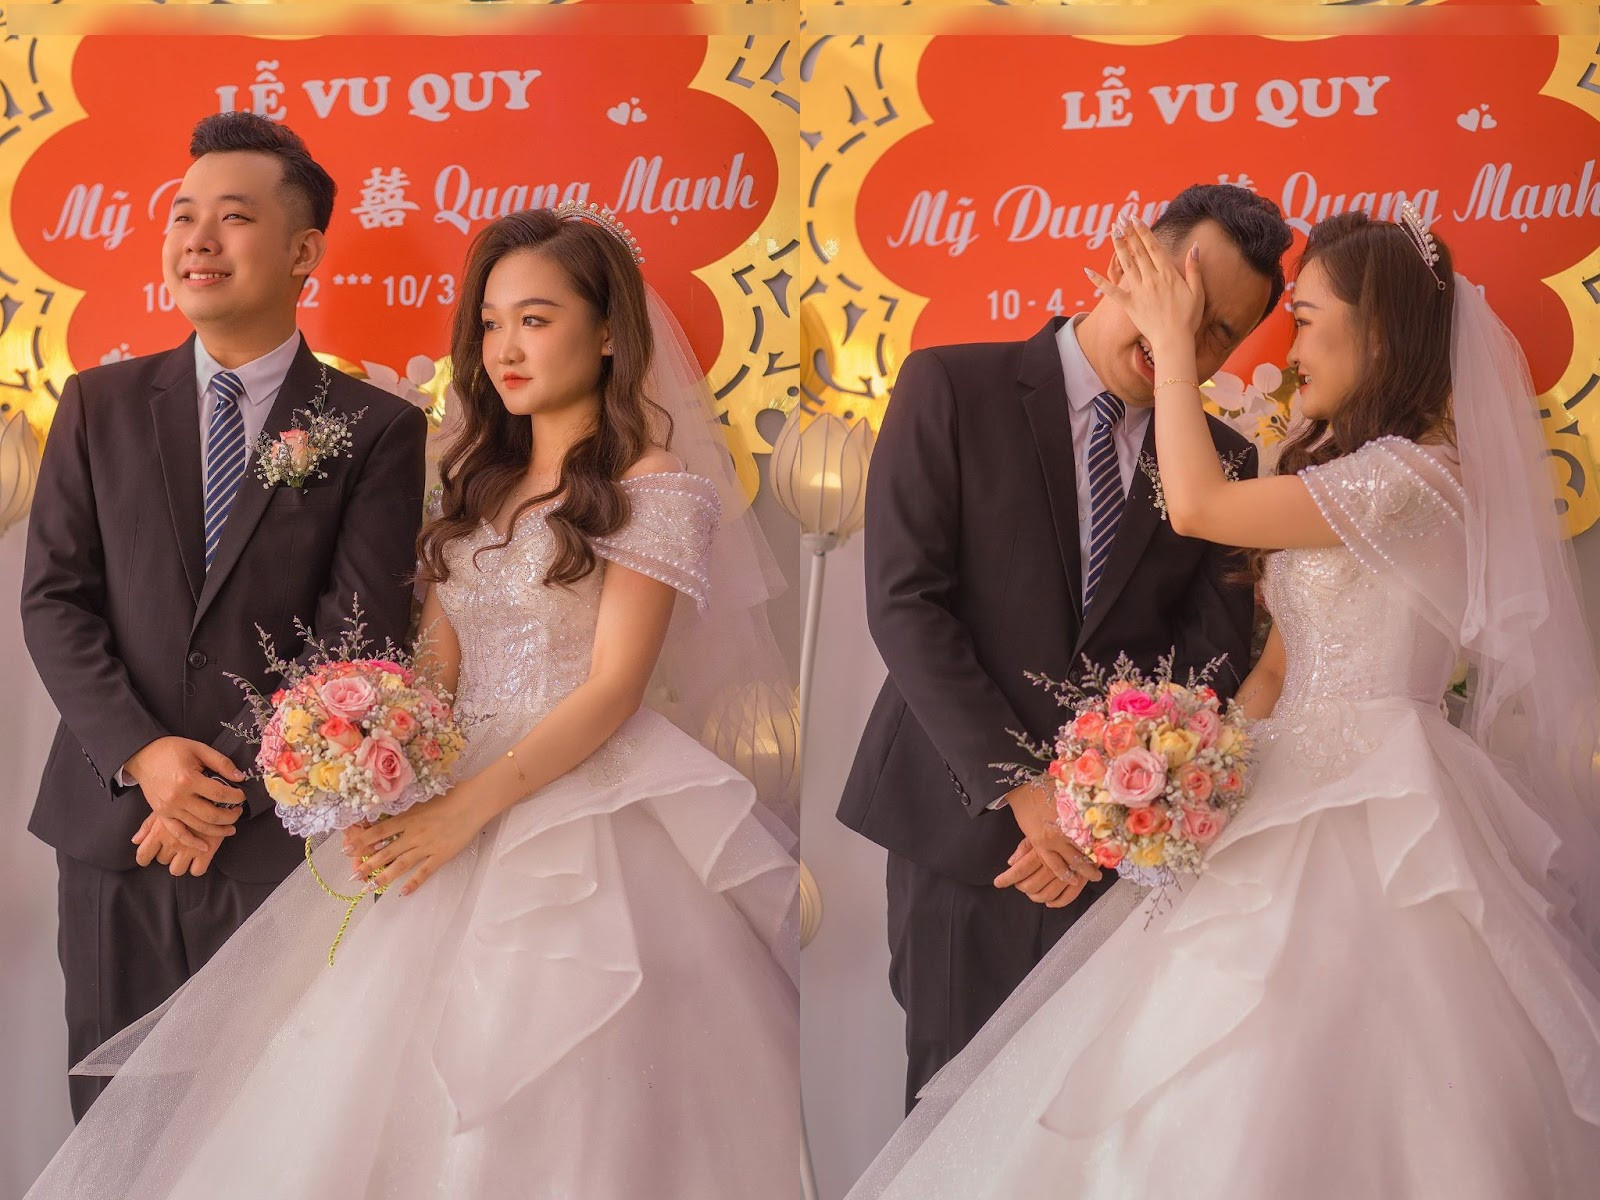 Chú rể bật khóc nức nở, nắm chặt tay bố vợ trong đám cưới ở Bắc Giang - 3